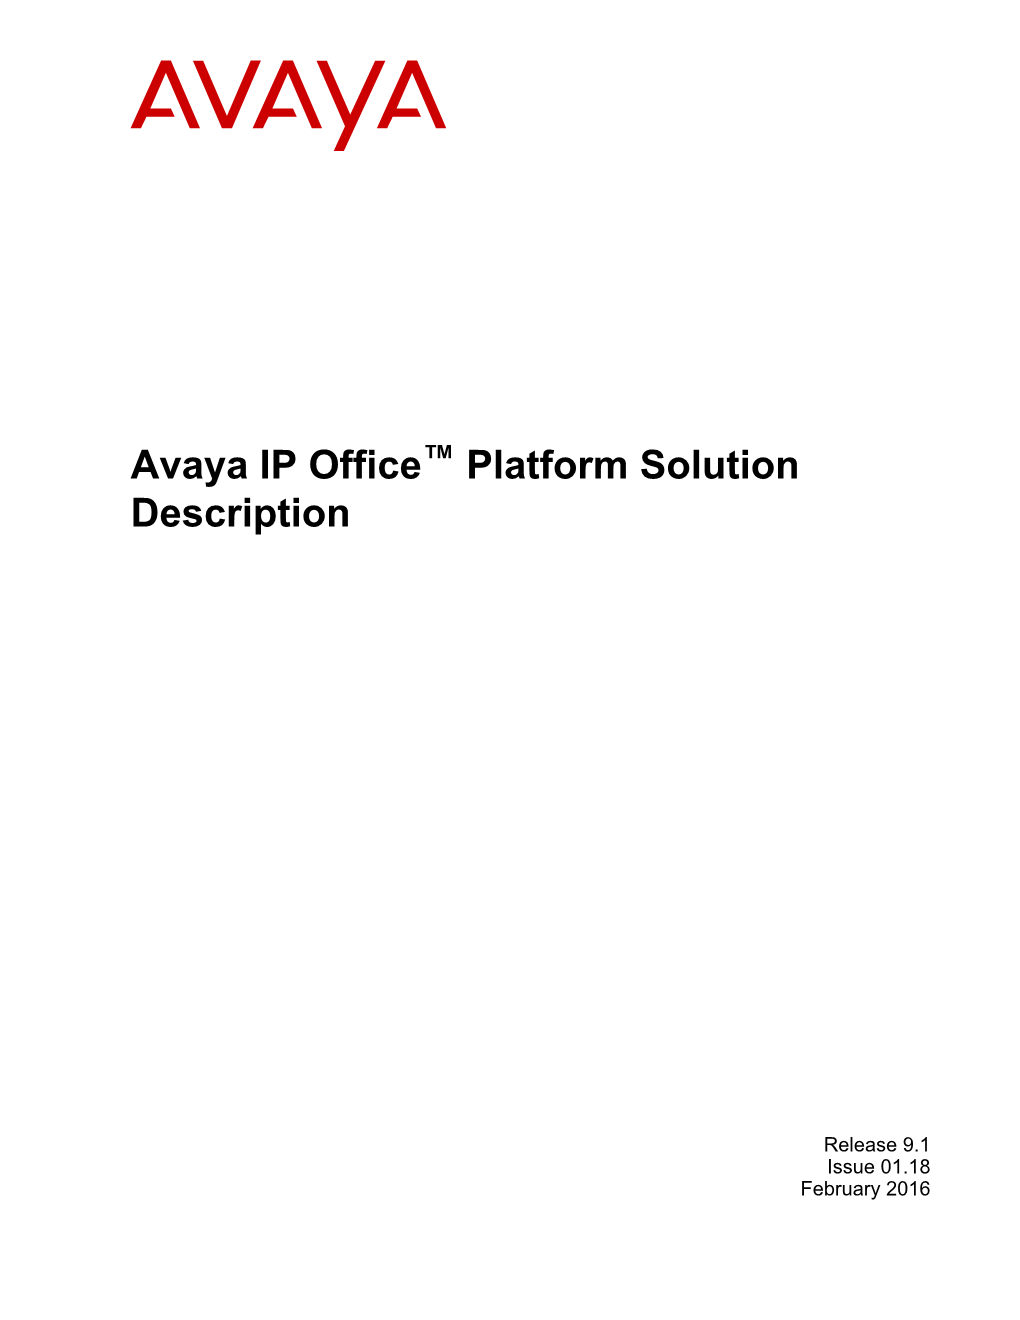 Avaya IP Office™ Platform Solution Description